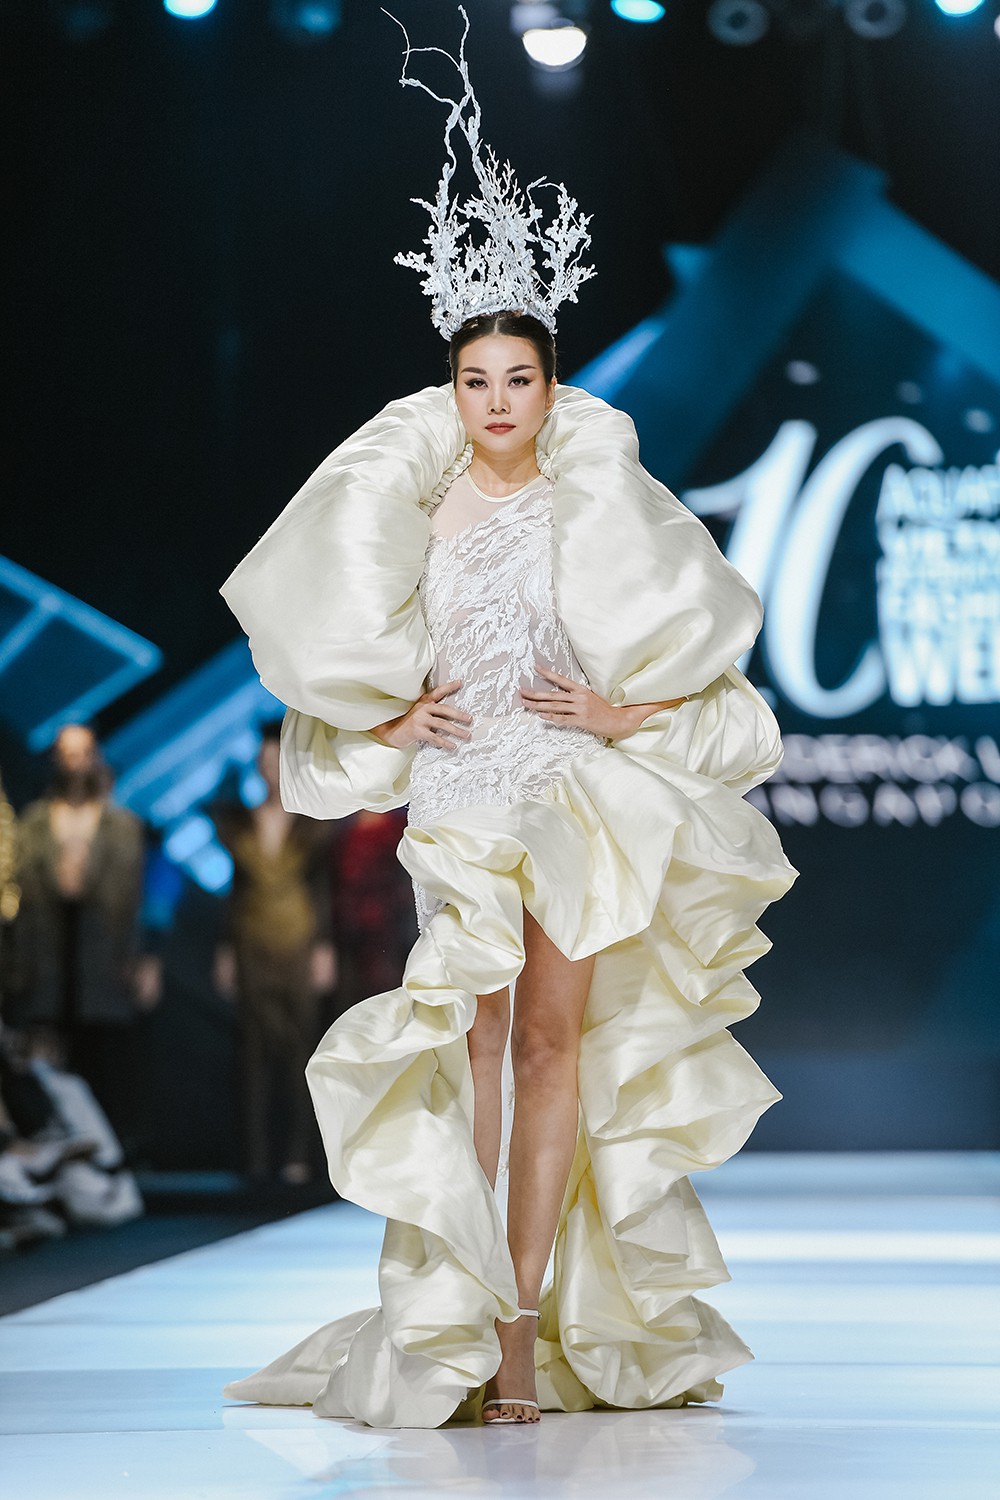 e30748159749c20941123eb06892d0da Siêu mẫu Thanh Hằng được vinh danh Fashion Icon tại VietNam Fashion Awards 2019